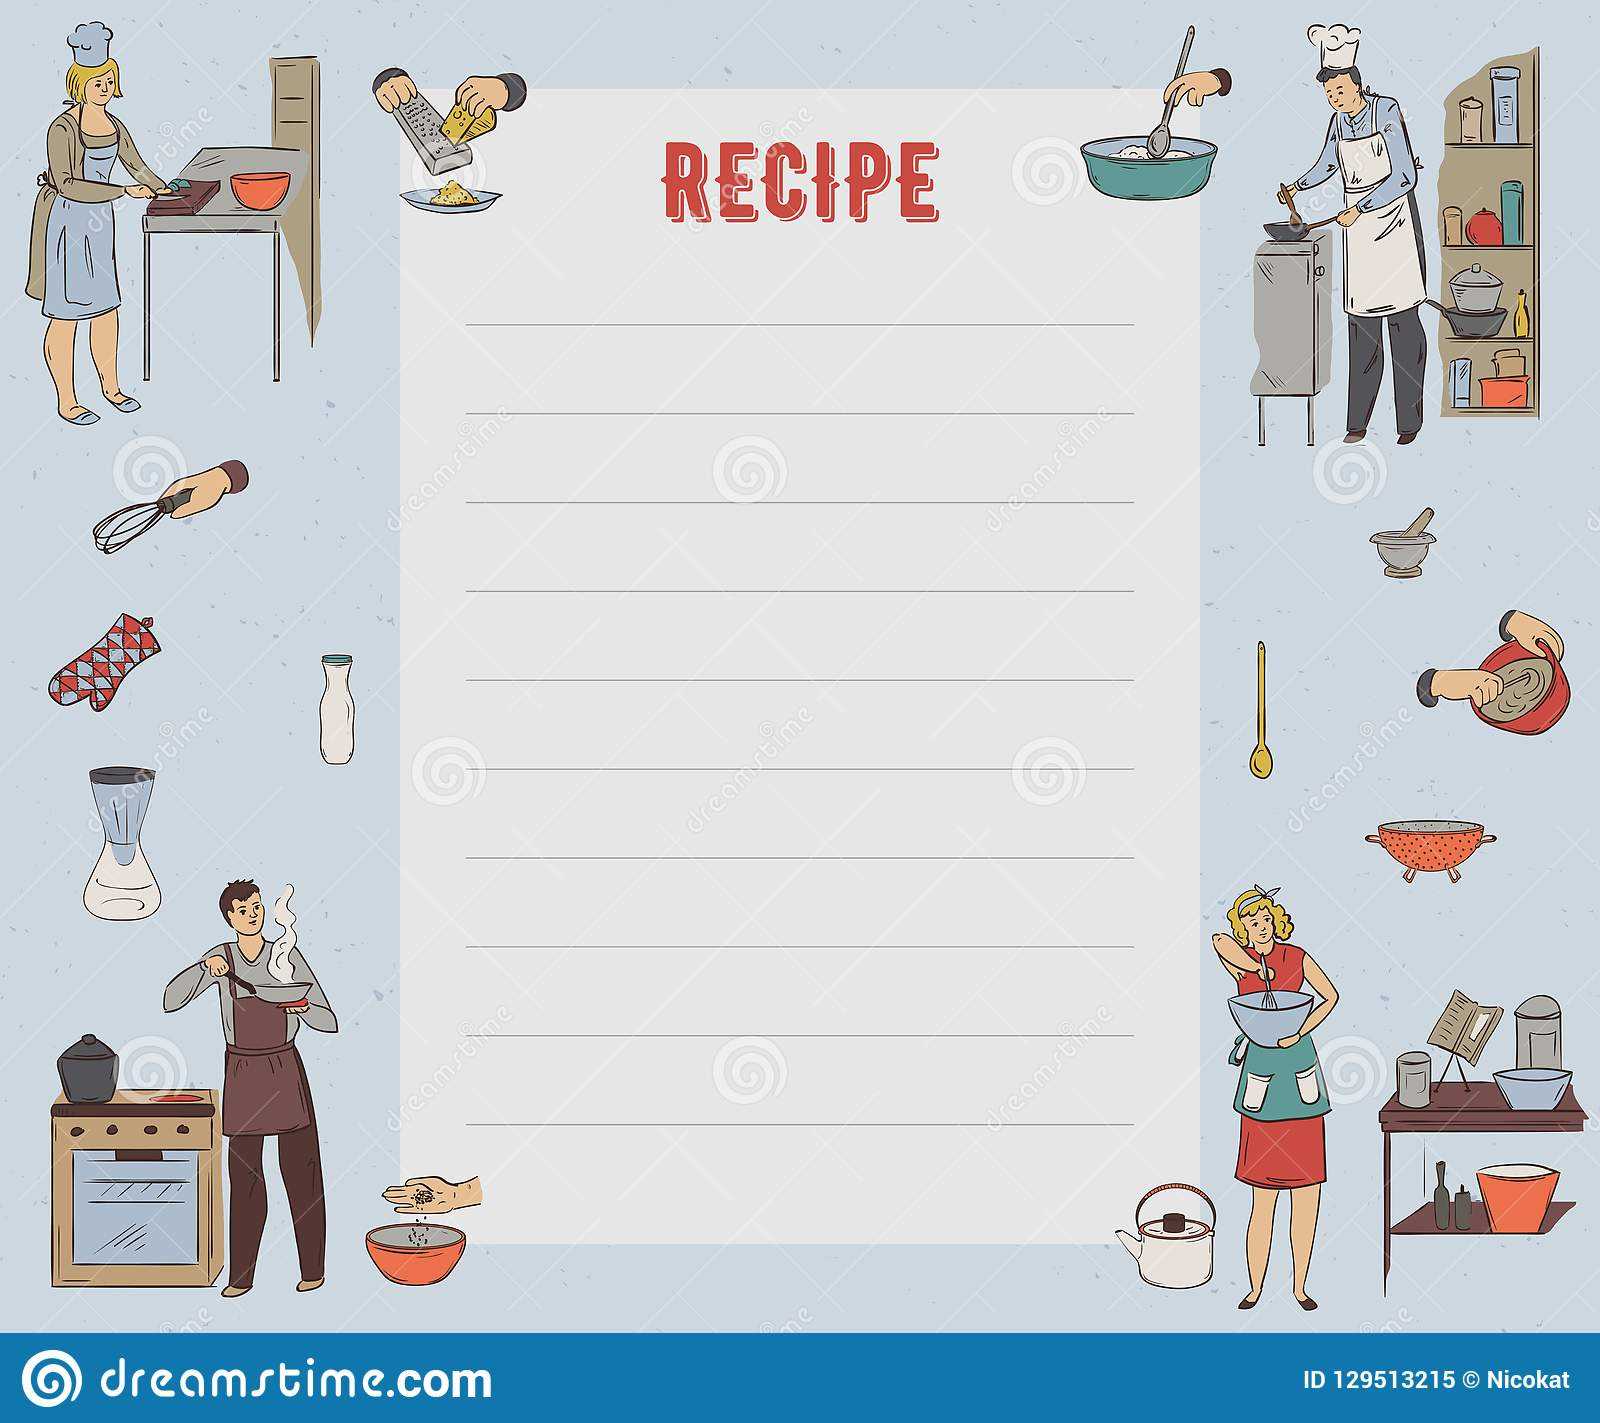 Recipe Card. Cookbook Page. Design Template With People Regarding Restaurant Recipe Card Template